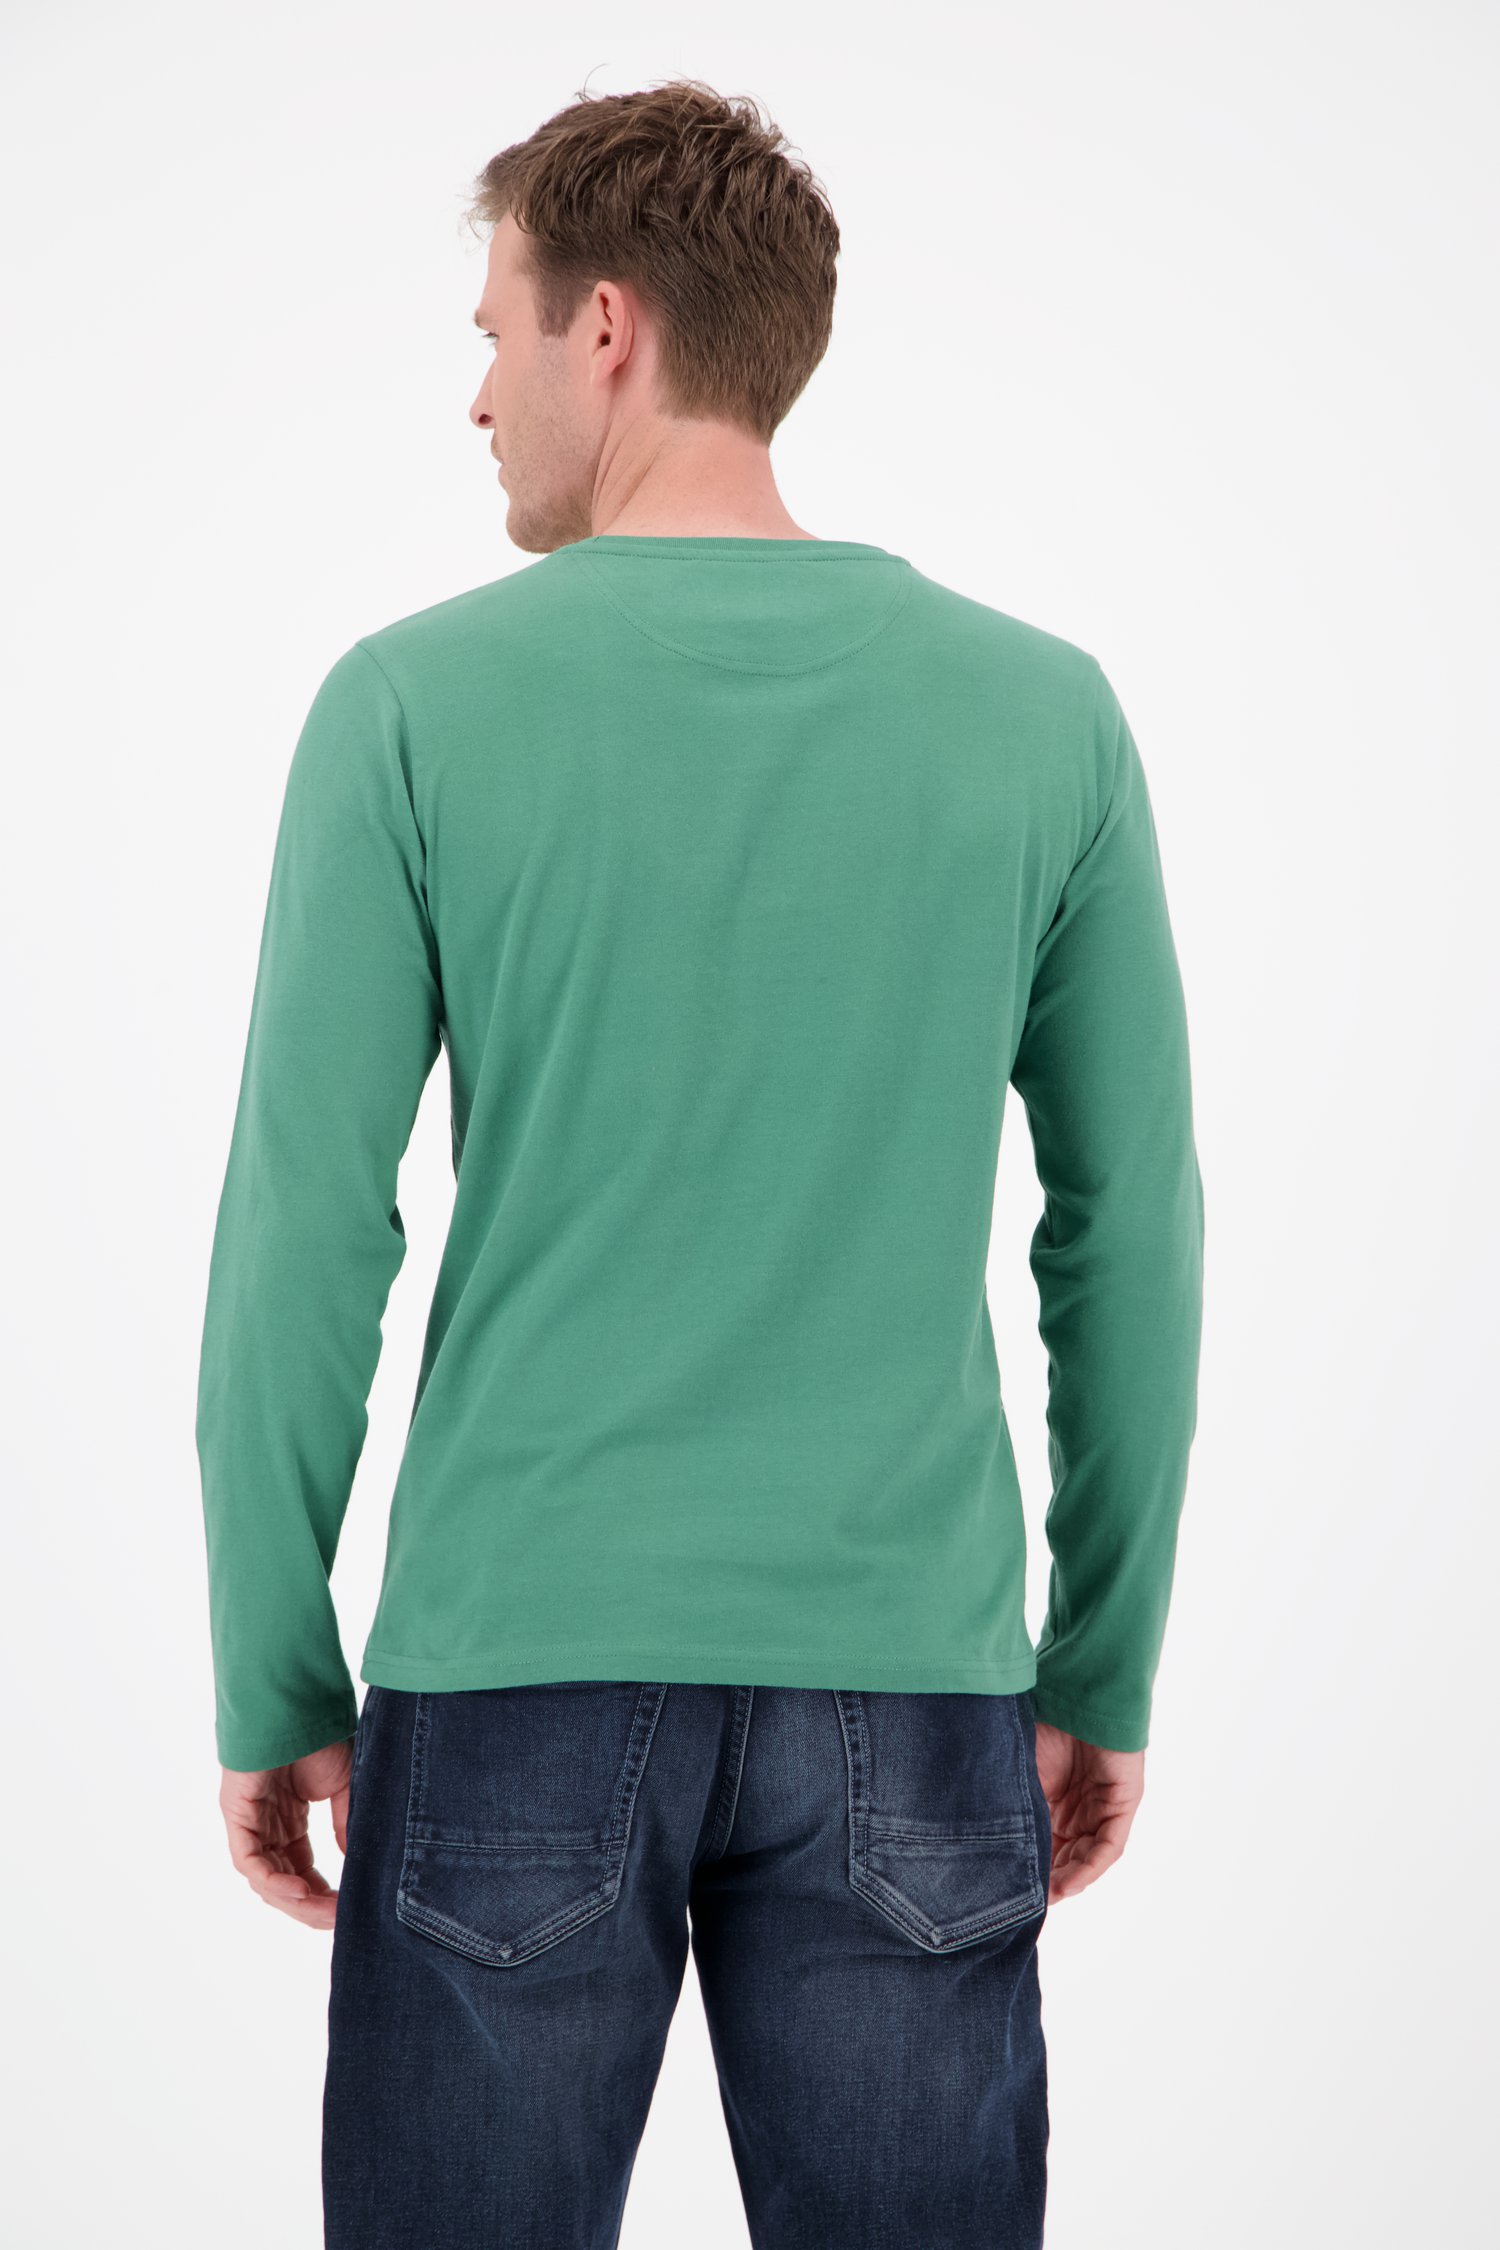 Groen T-shirt met print van Ravøtt voor Heren